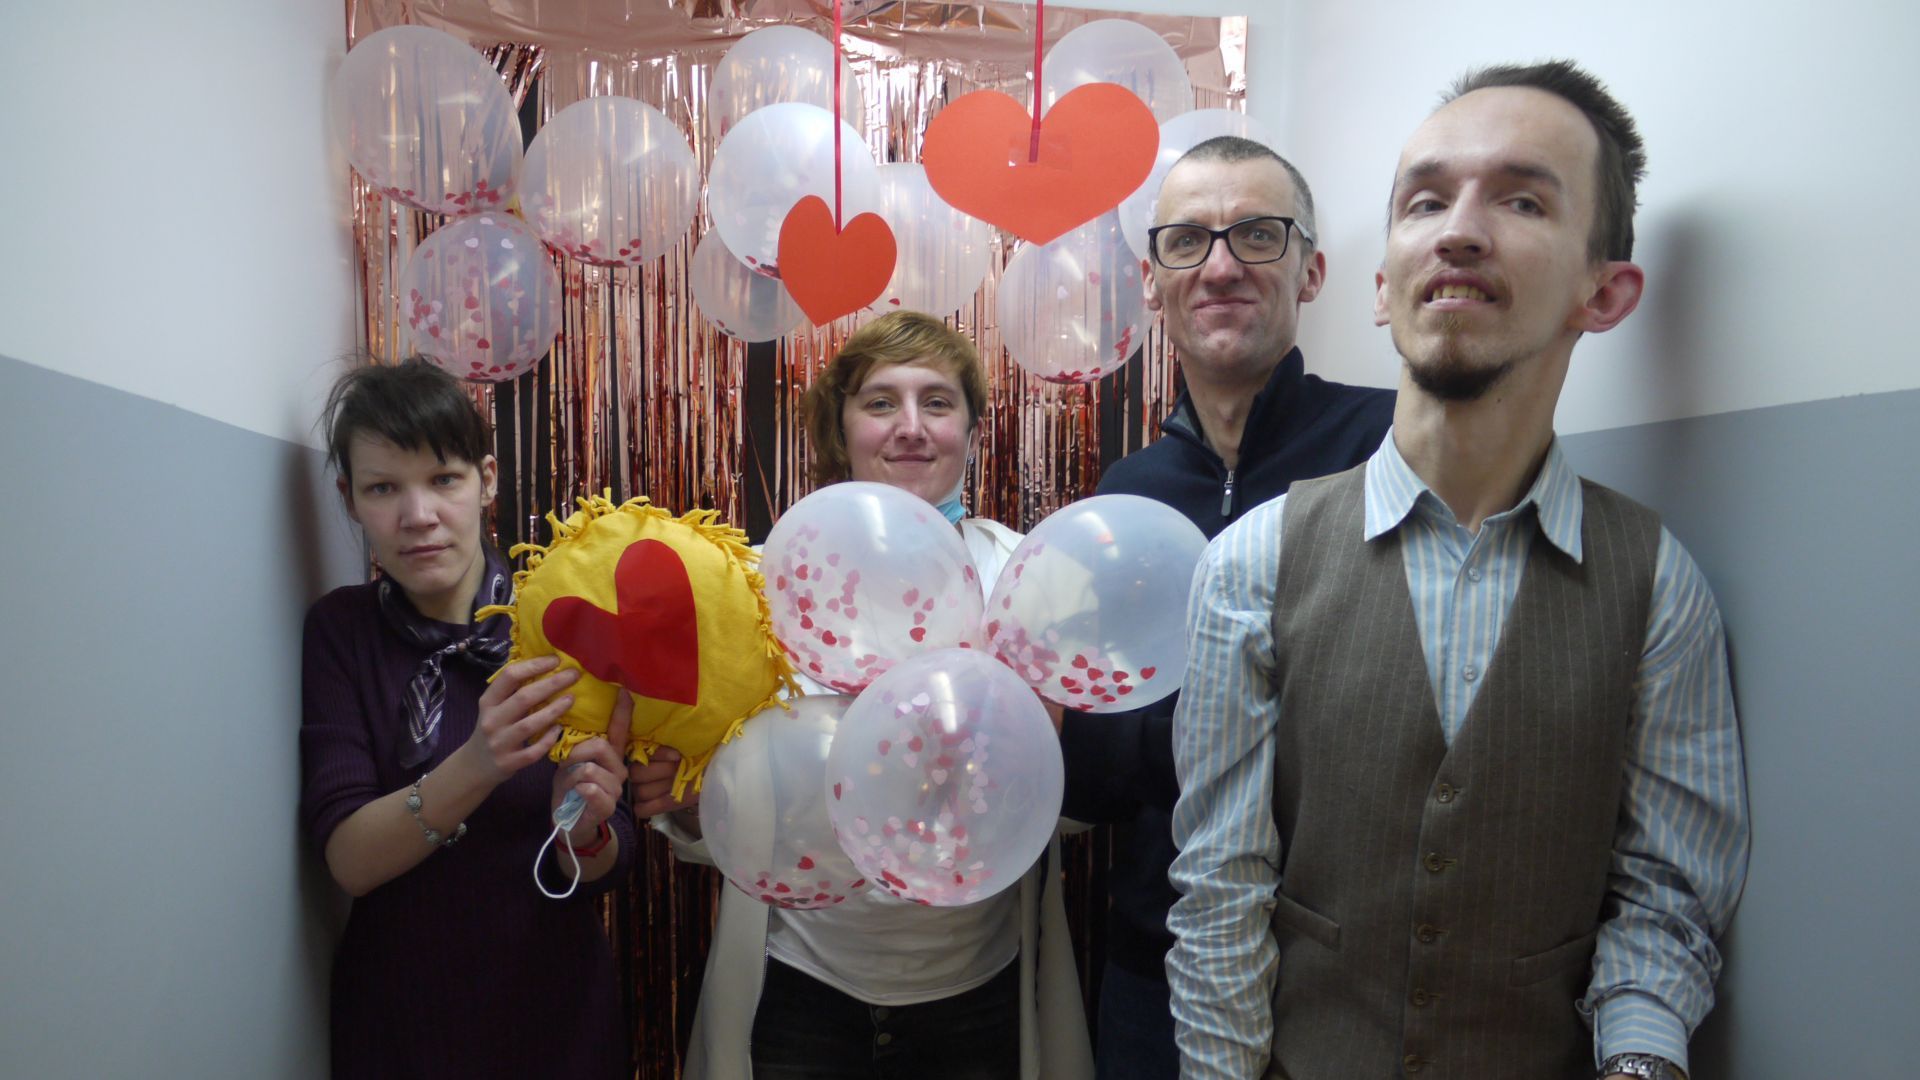 Uczestnicy pozujący na ściance udekorowanej balonami, serpentynami i serduszkami.